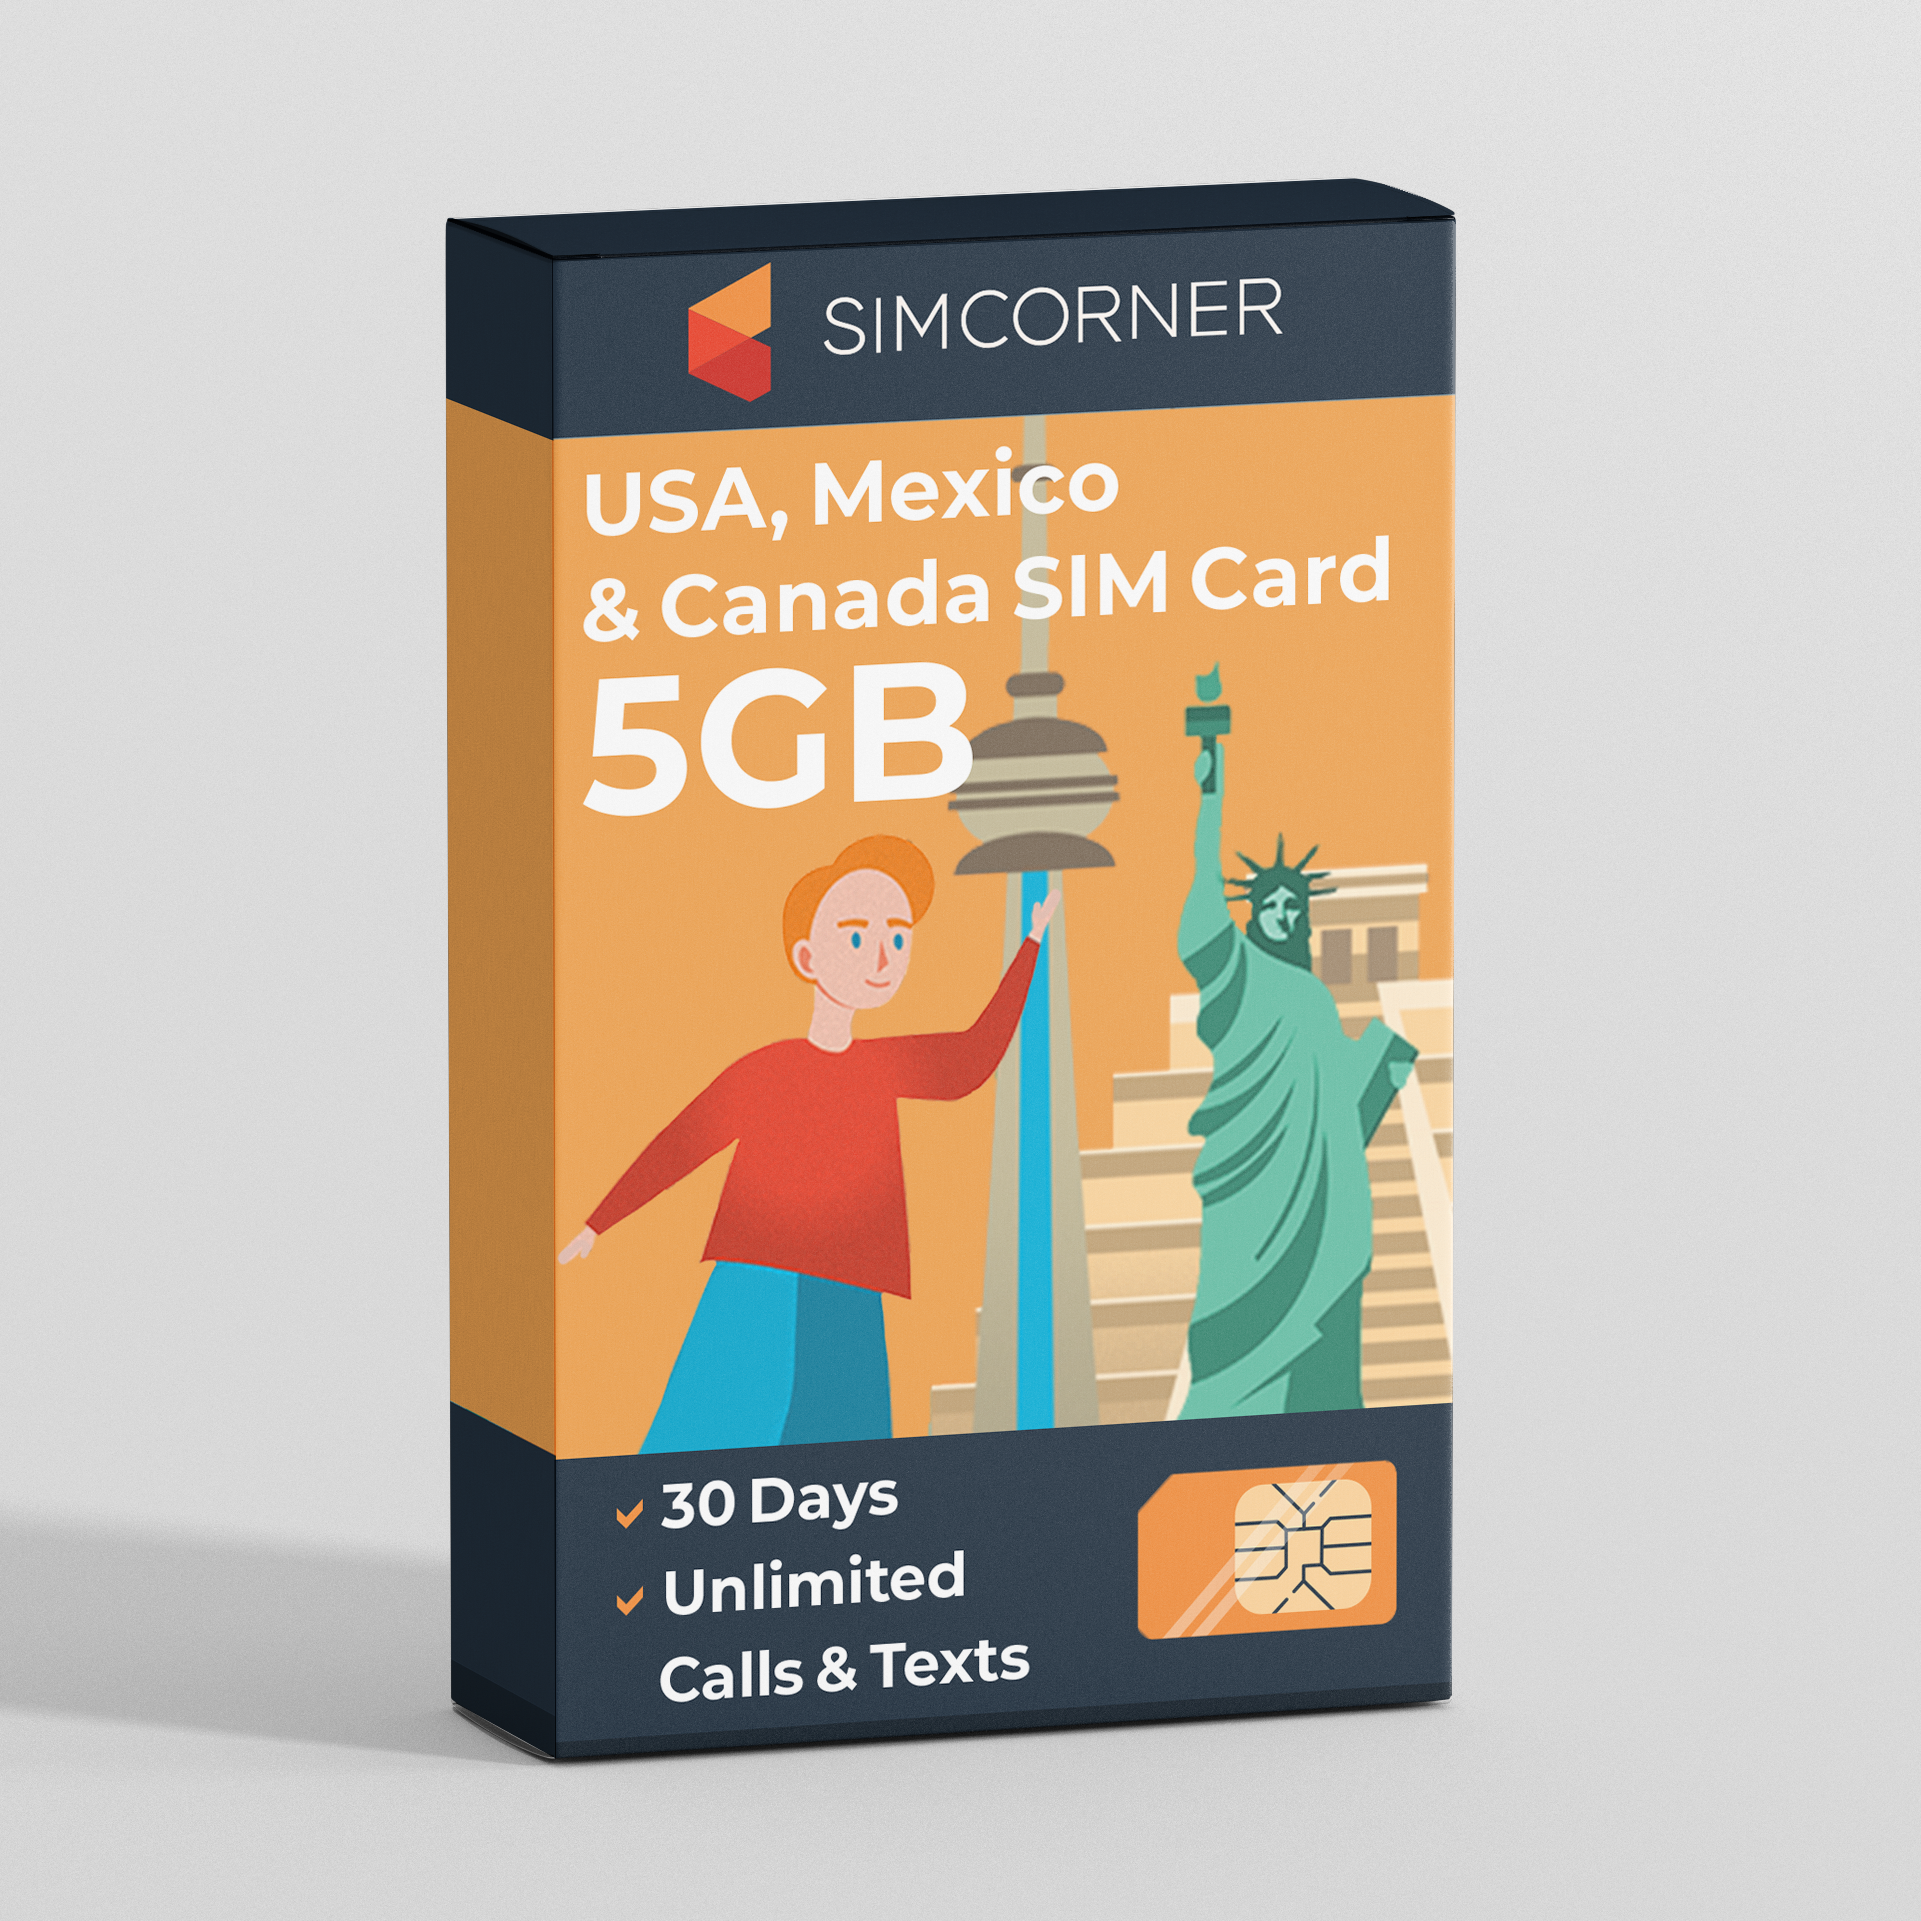 Sim Card for USA Canada Mexico (5GB)